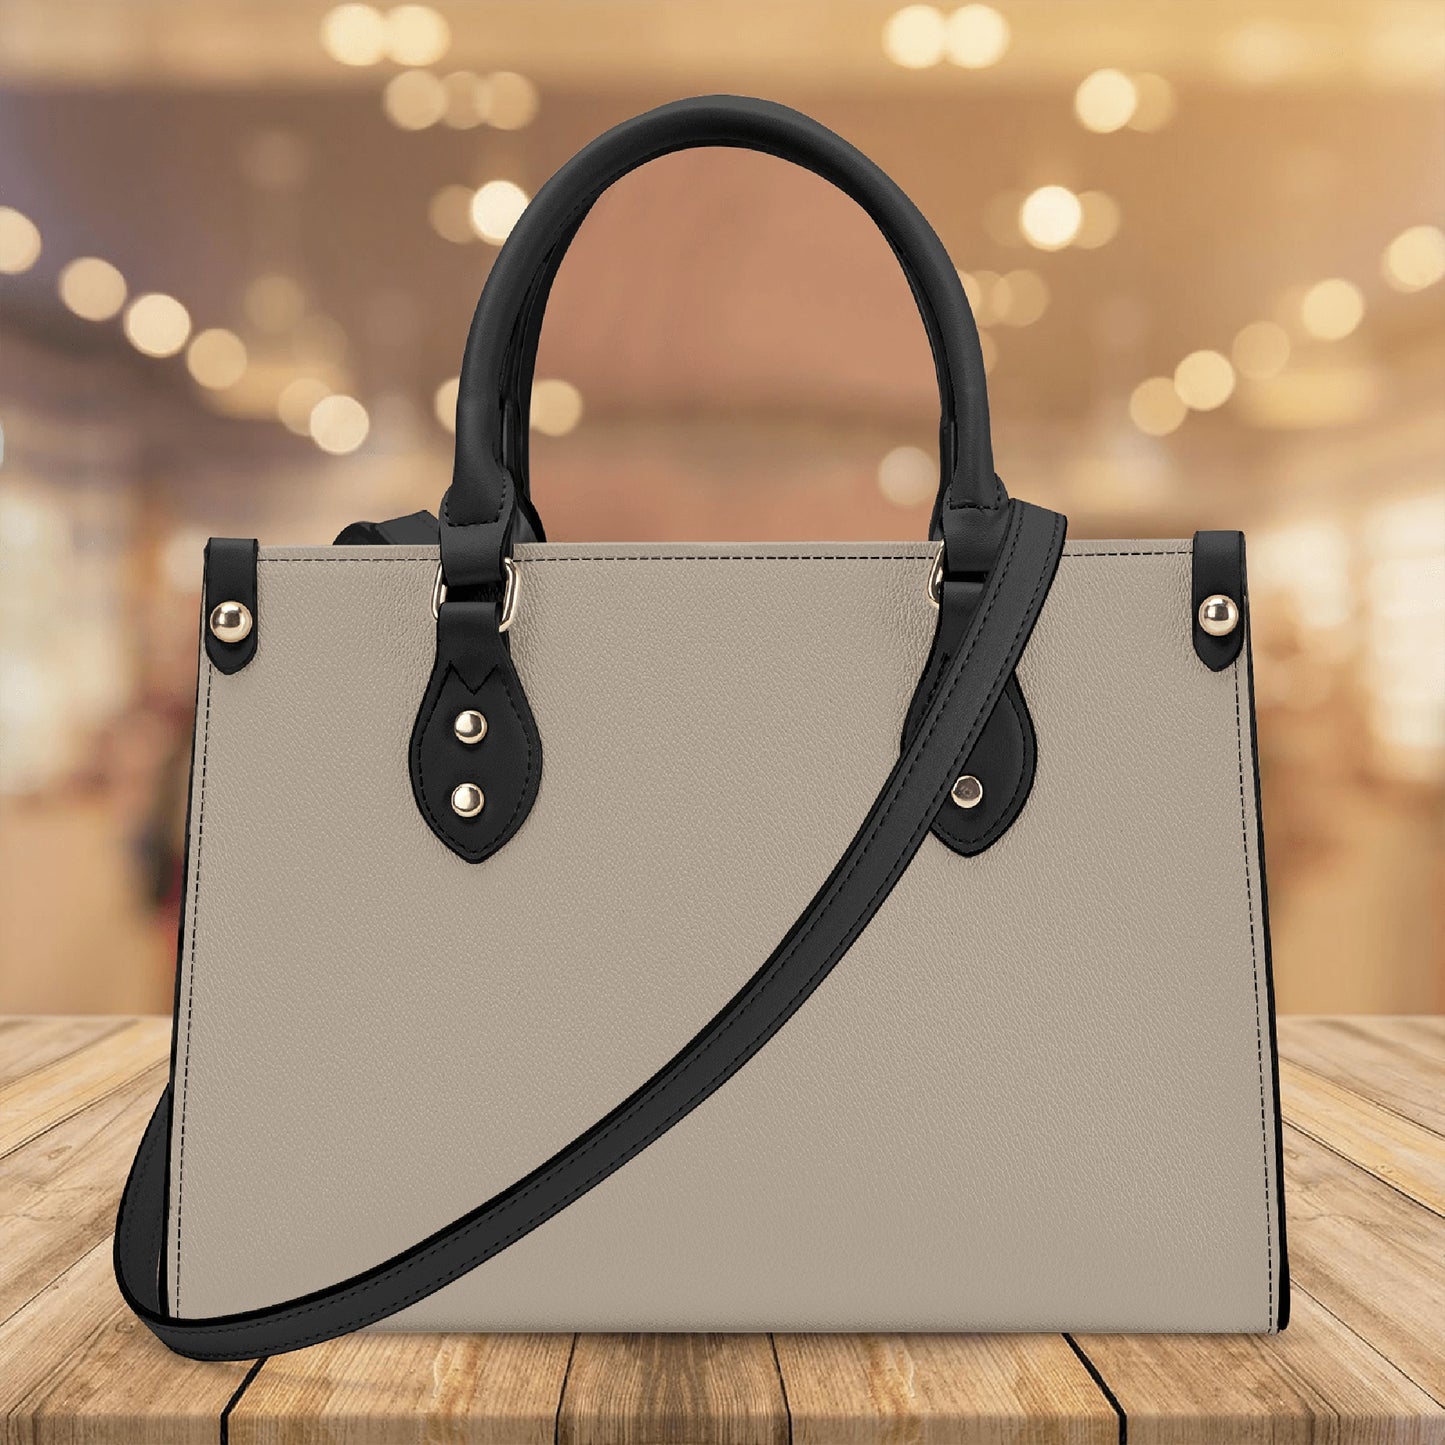 Boris - Luxury Women Handbag